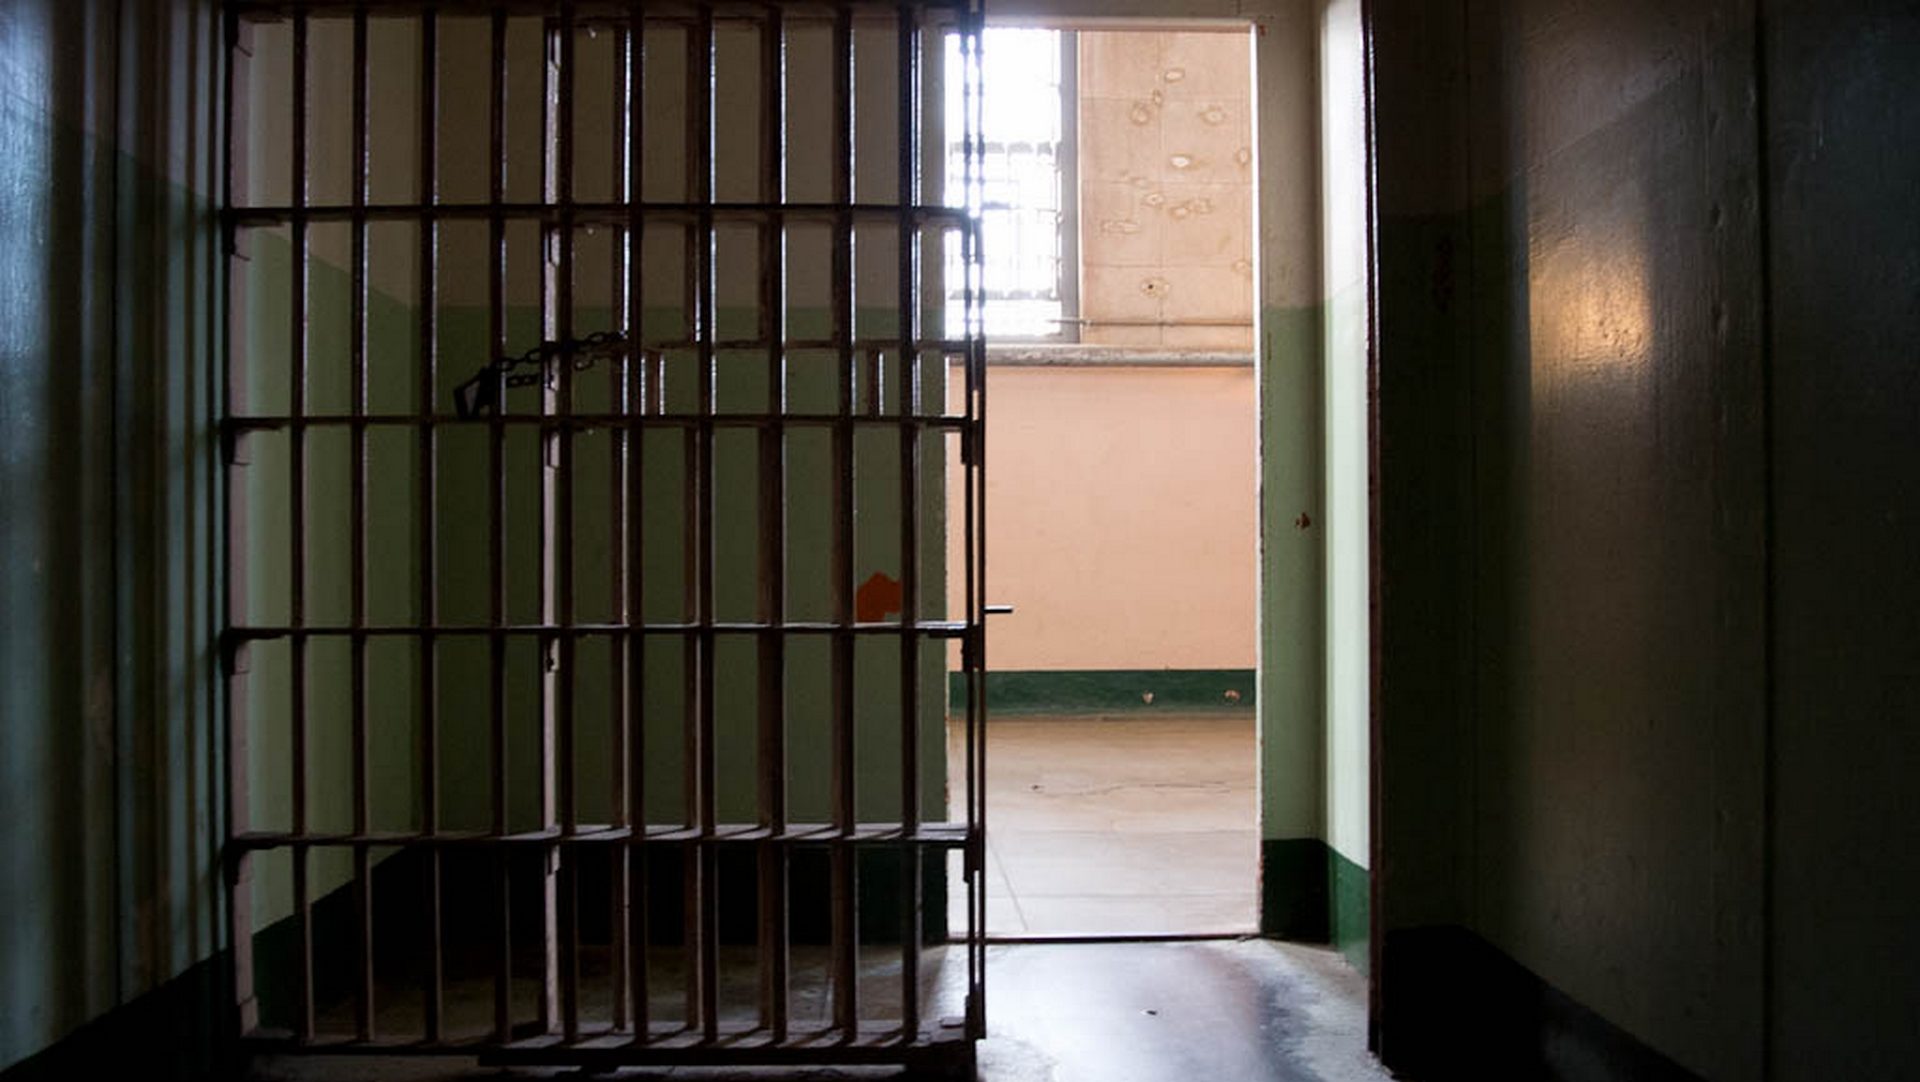 L'aumônier de prison a fait des avances sexuelles à une détenue (photo flickr Stefano Mazzone CC BY 2.0) 